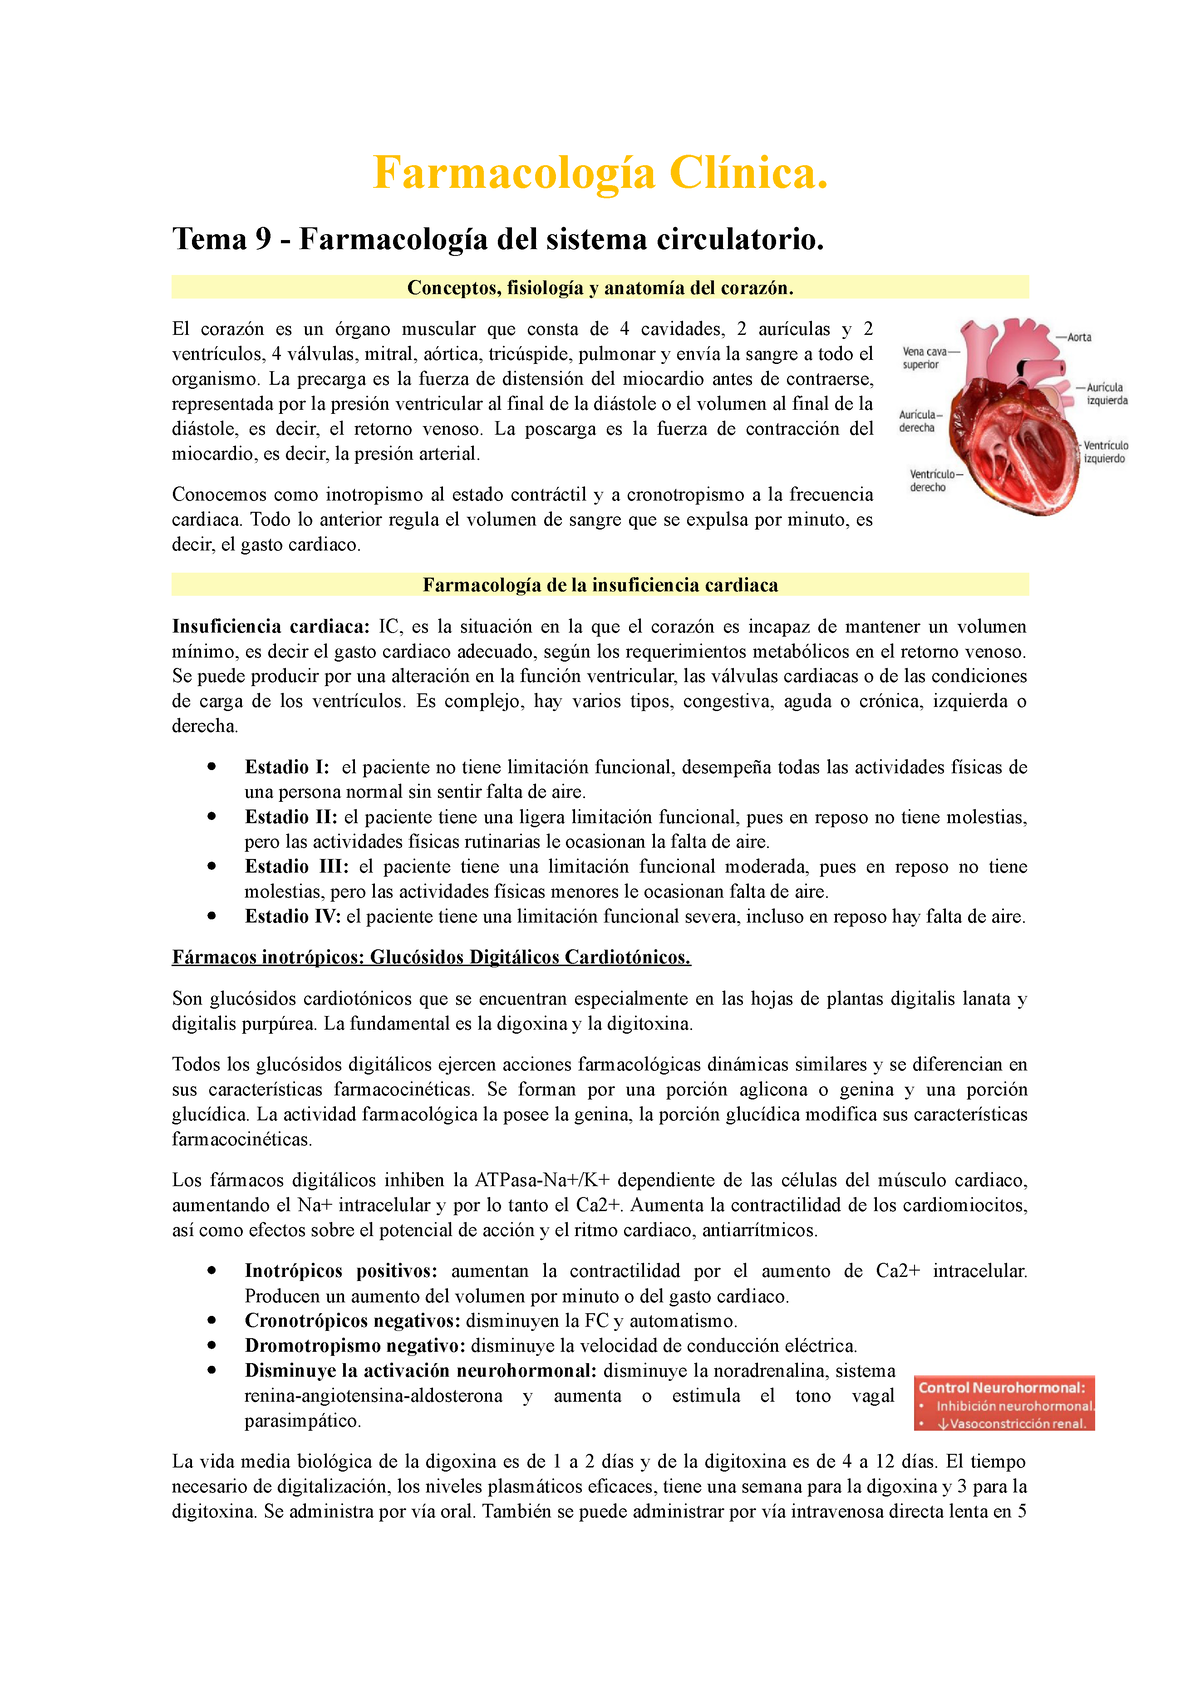 Resumo DE Farmacologia Cardiaca - RESUMO DE Pode ser de dois tipos: 1)  derivada de um problema que - Studocu